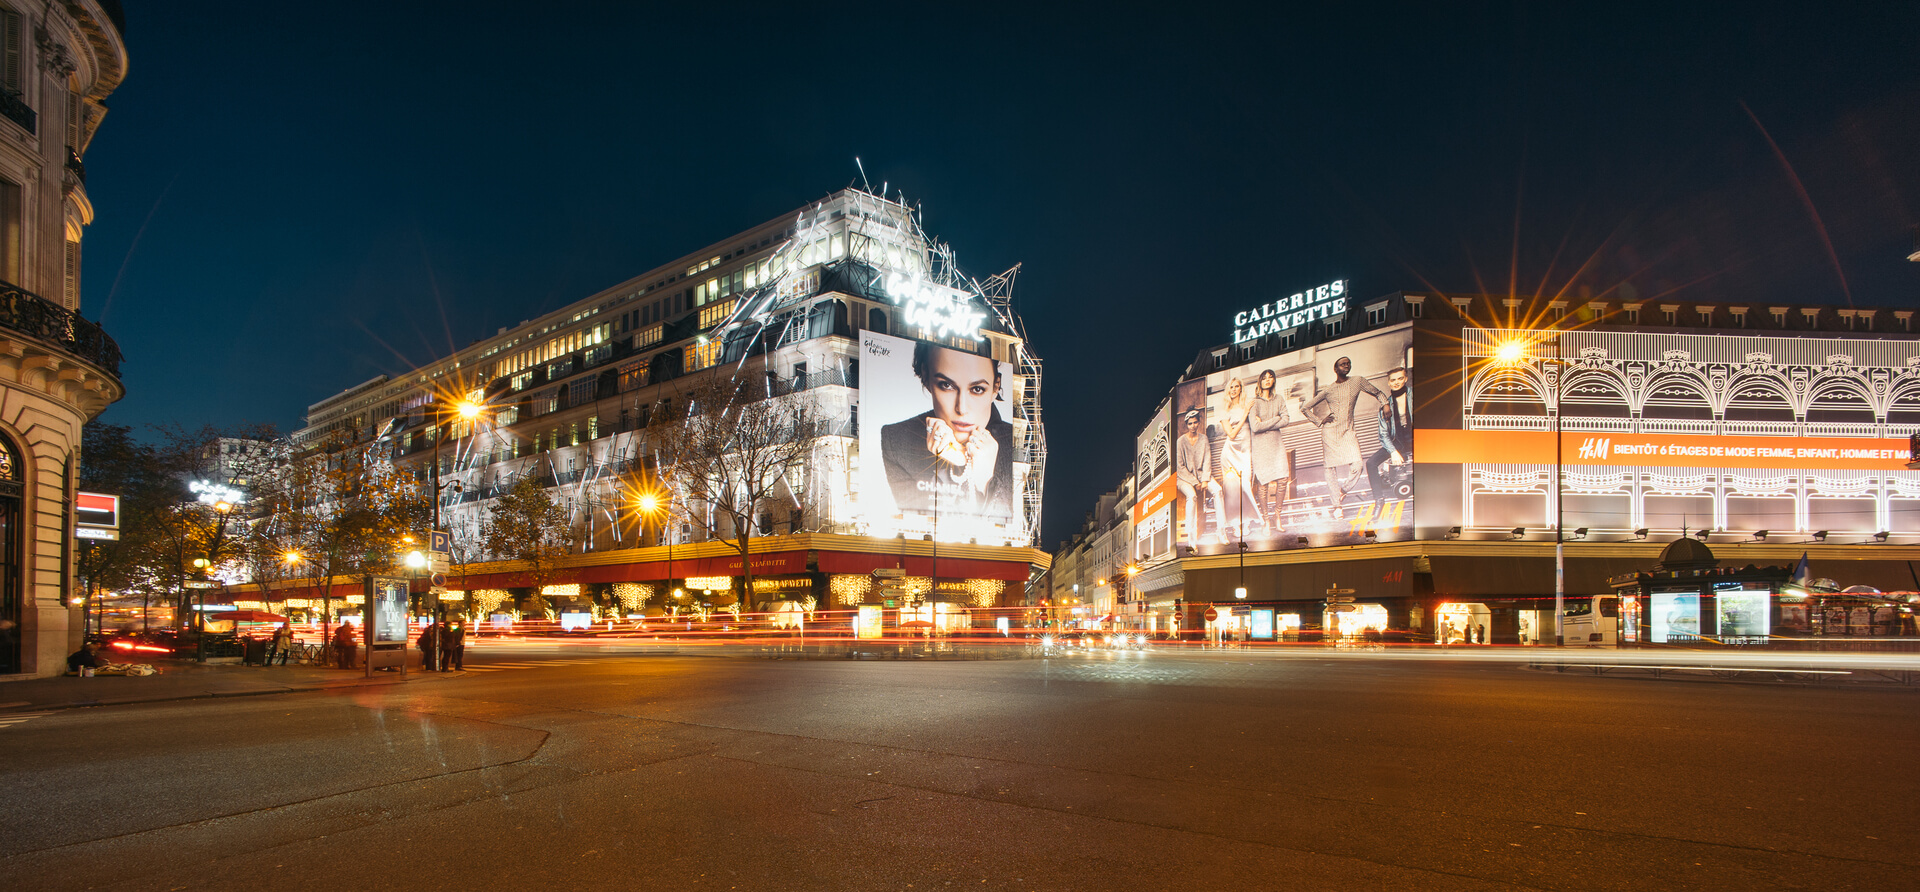 Ночной вид на галереи Лафайет и бульвар Хаусманн. Галерея Лафайет - это сеть французских универмагов высшего класса.